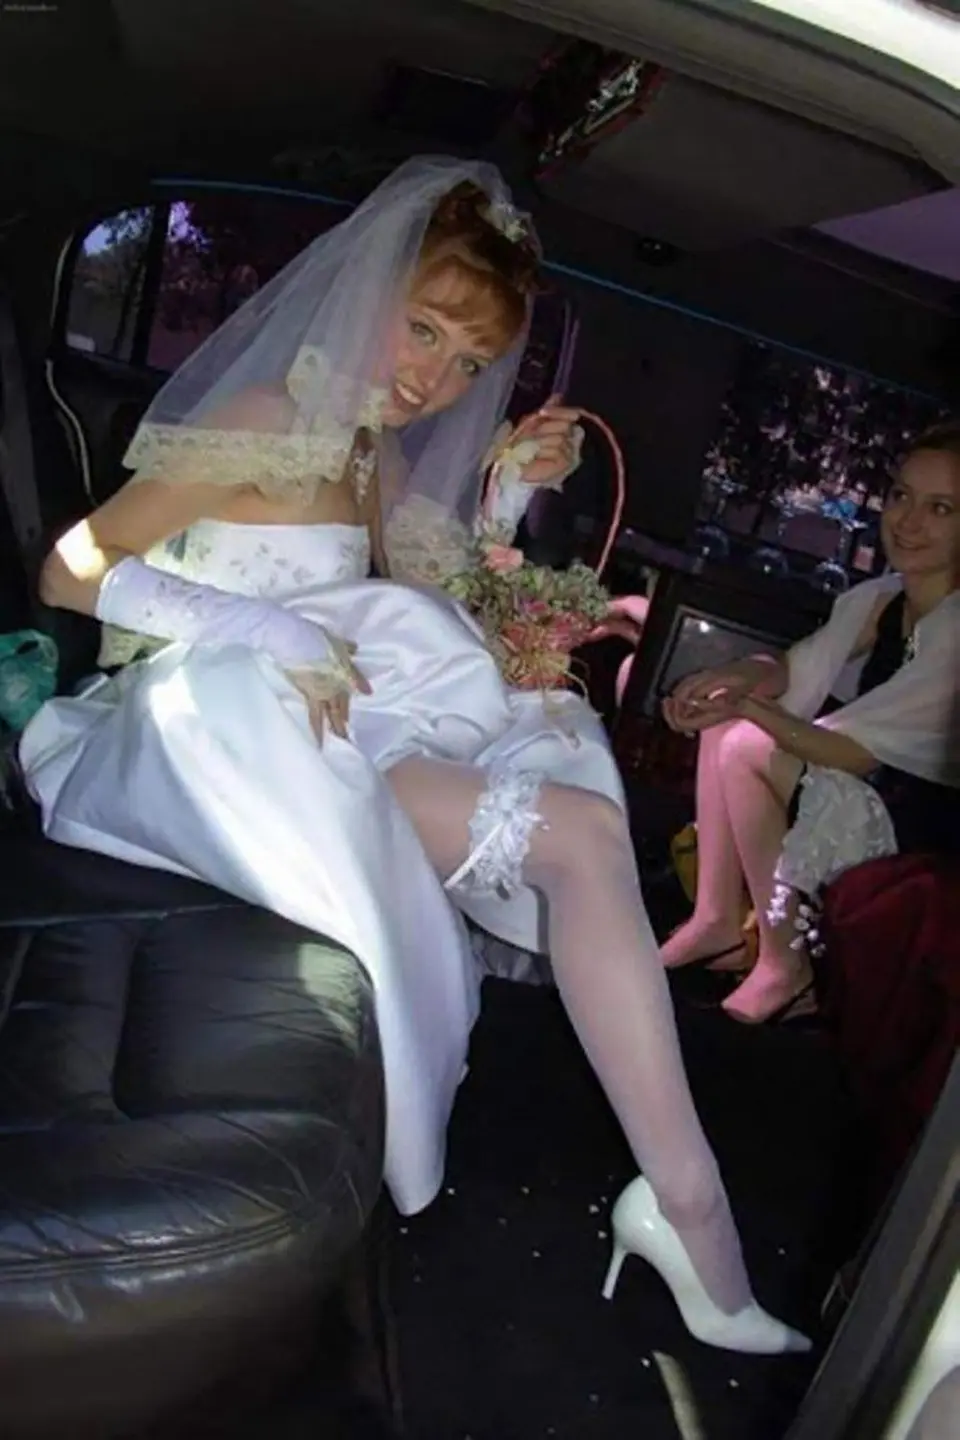 Под платьем невесты